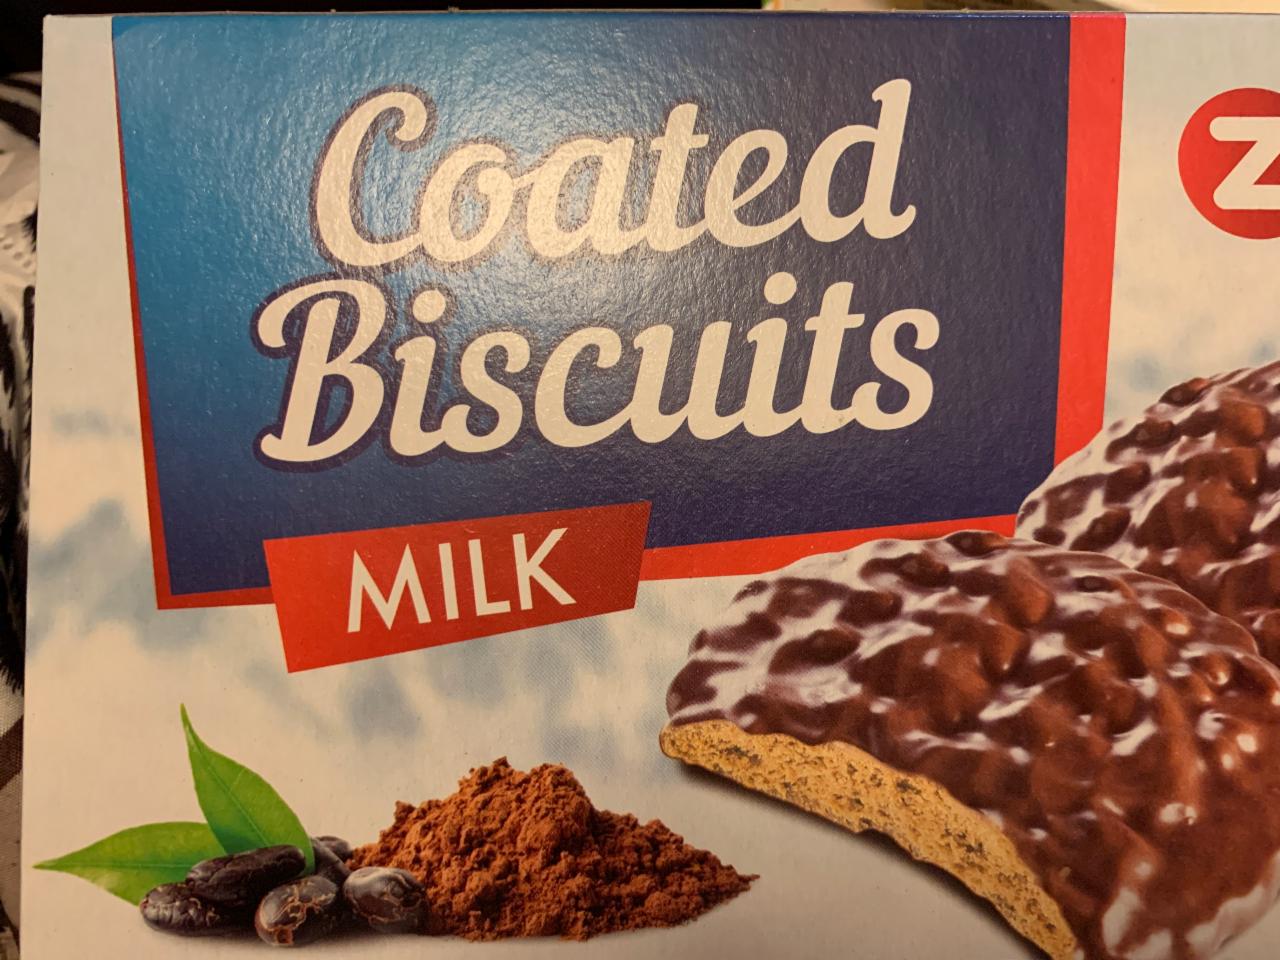 Fotografie - coated biscuits milk